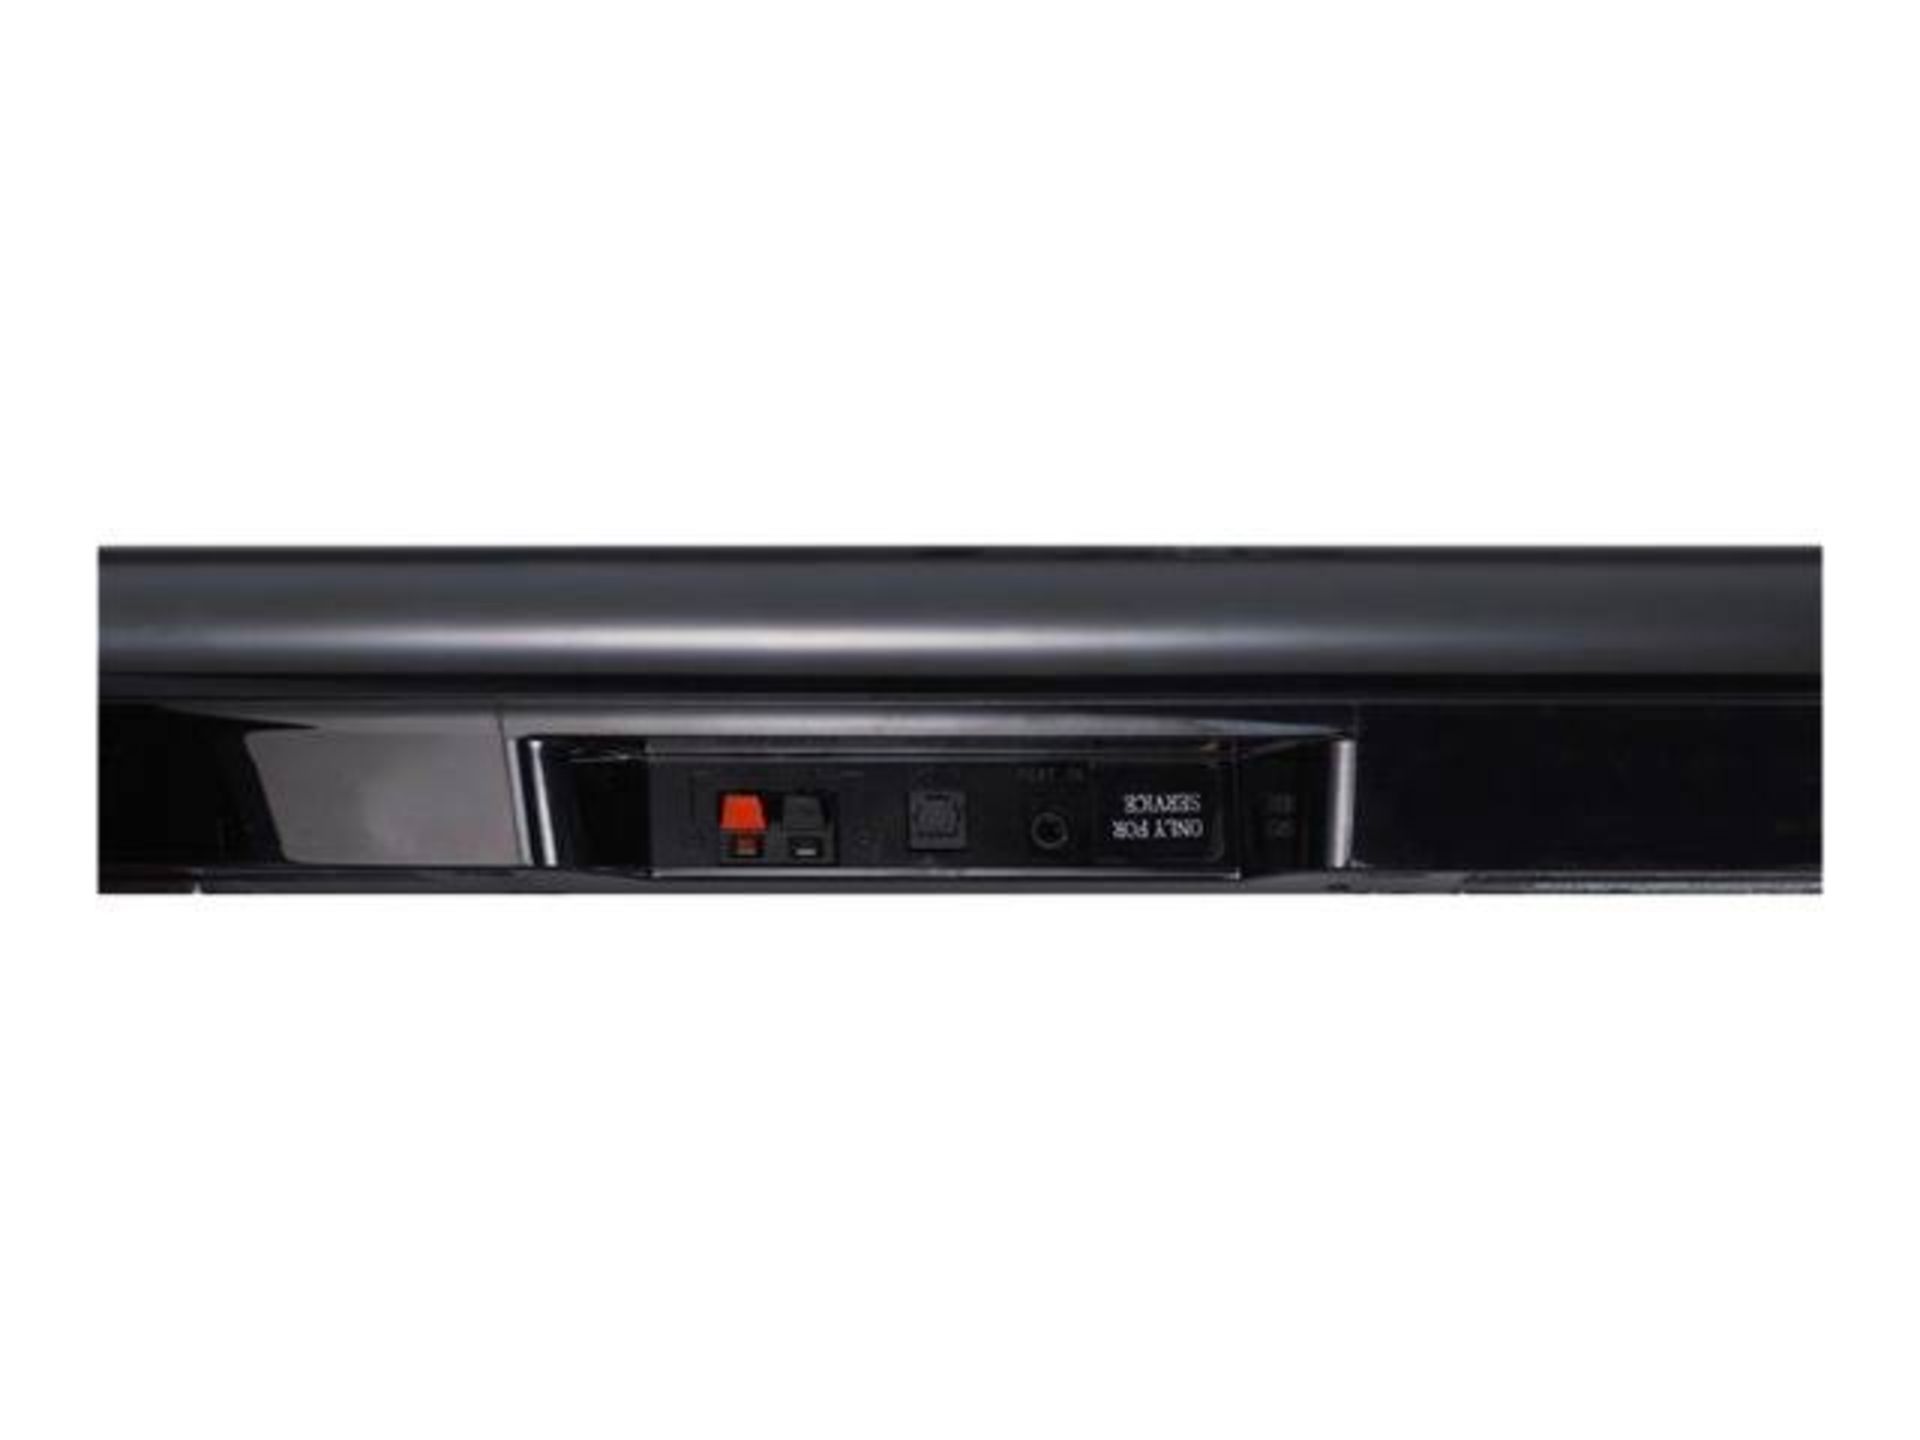 V Grade A NB2540 LG 120W Home Cinema Soundbar System 2.1 With Sub - Image 5 of 10